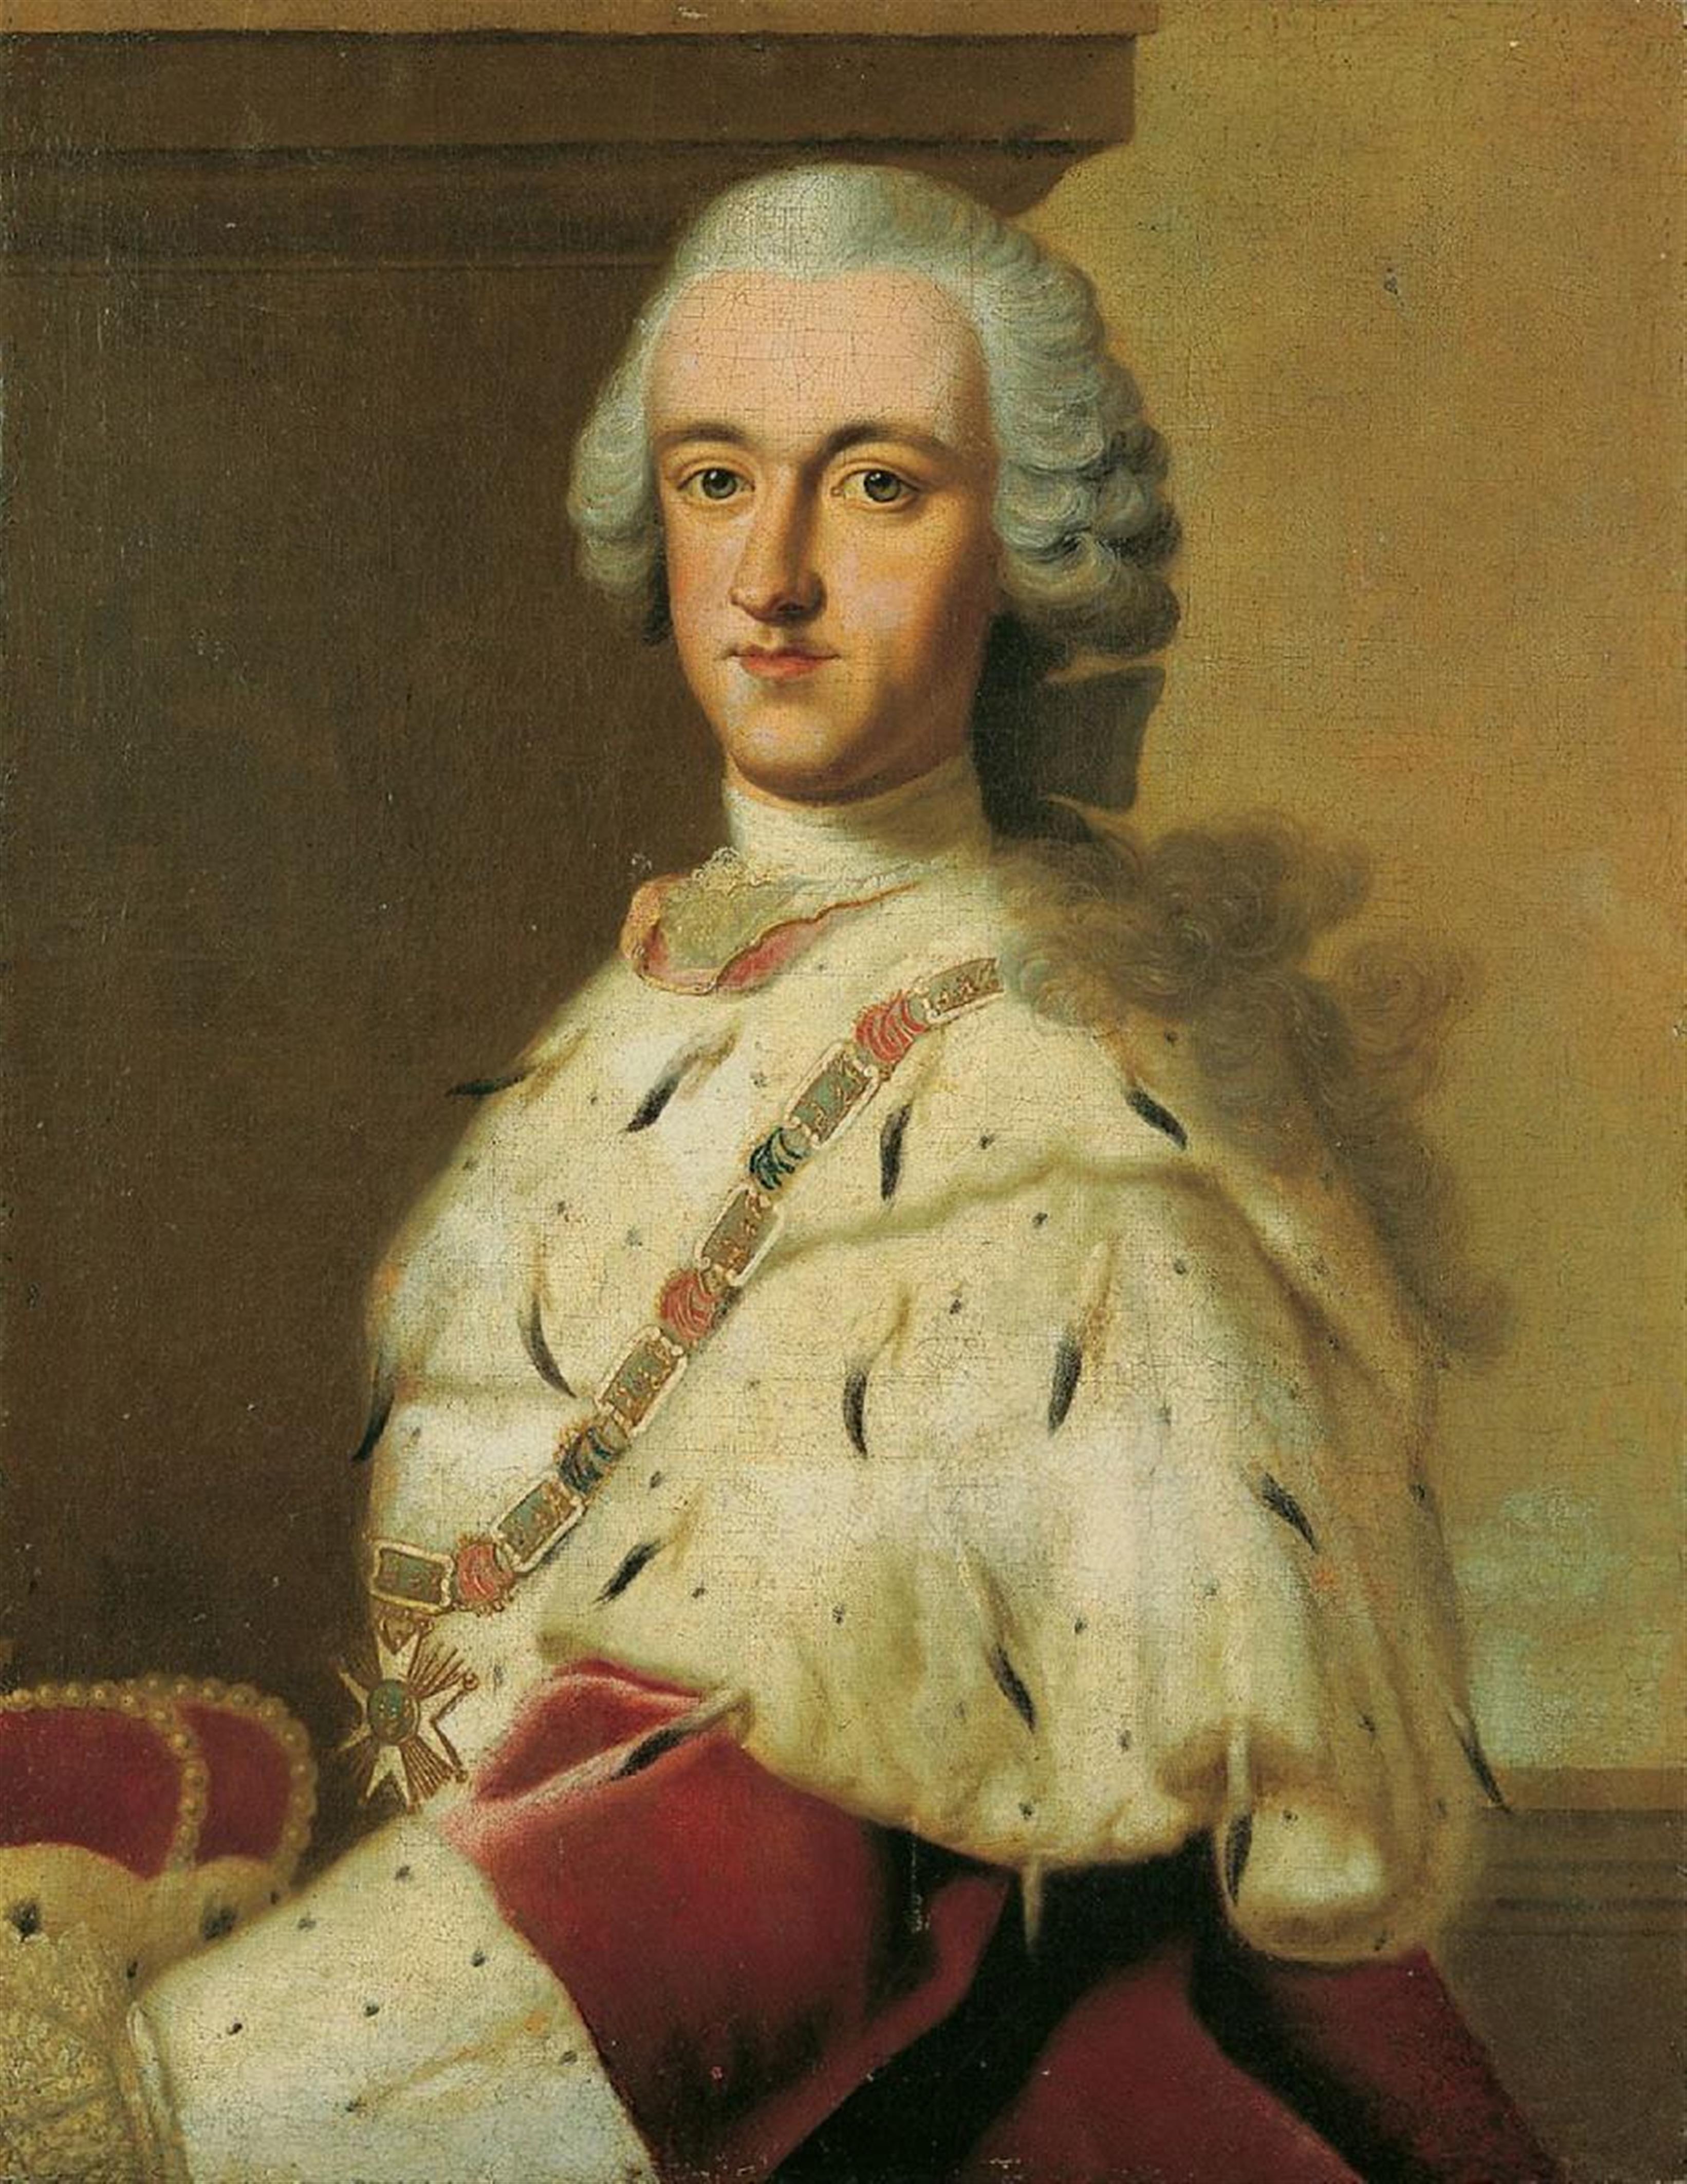 Südwestdeutscher Meister - BILDNIS DES JUNGEN KURFÜRSTEN KARL THEODOR VON DER PFALZ (1724-1799) MIT DER KETTE DES HUBERTUSORDENS. - image-1